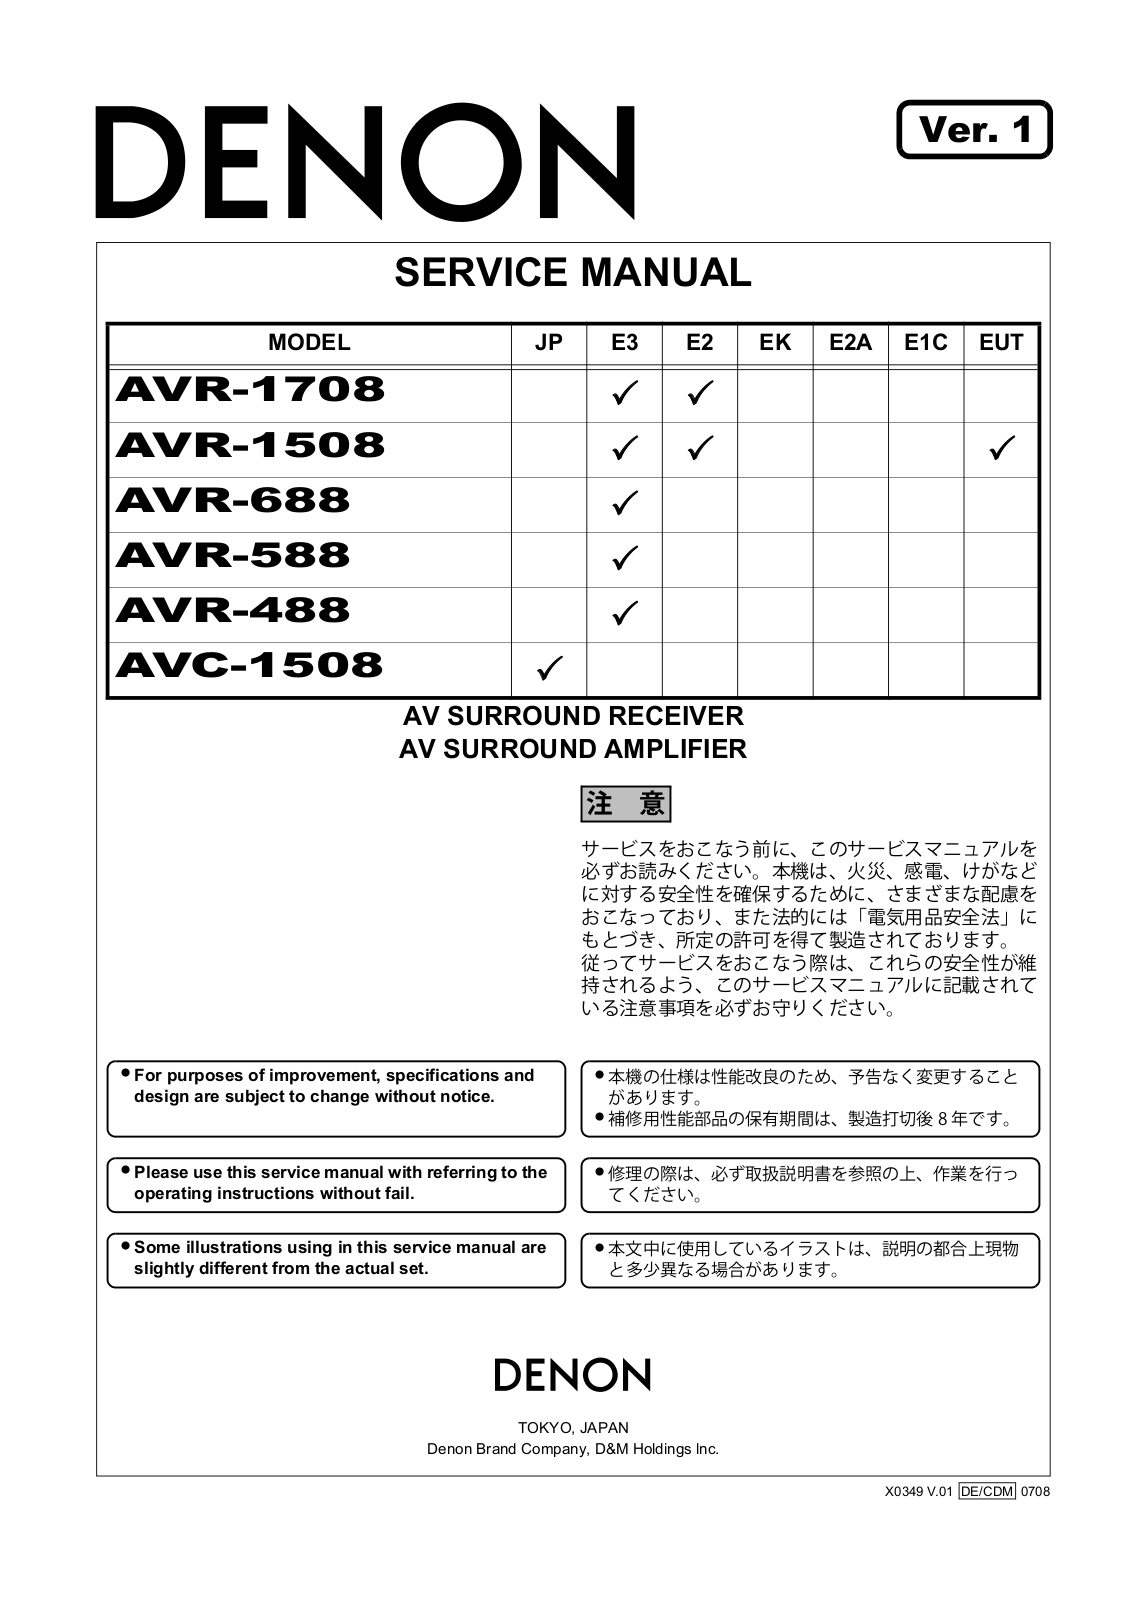 Denon AVC-1508, AVR-488, AVR-588, AVR-688, AVR-1508 Service Manual